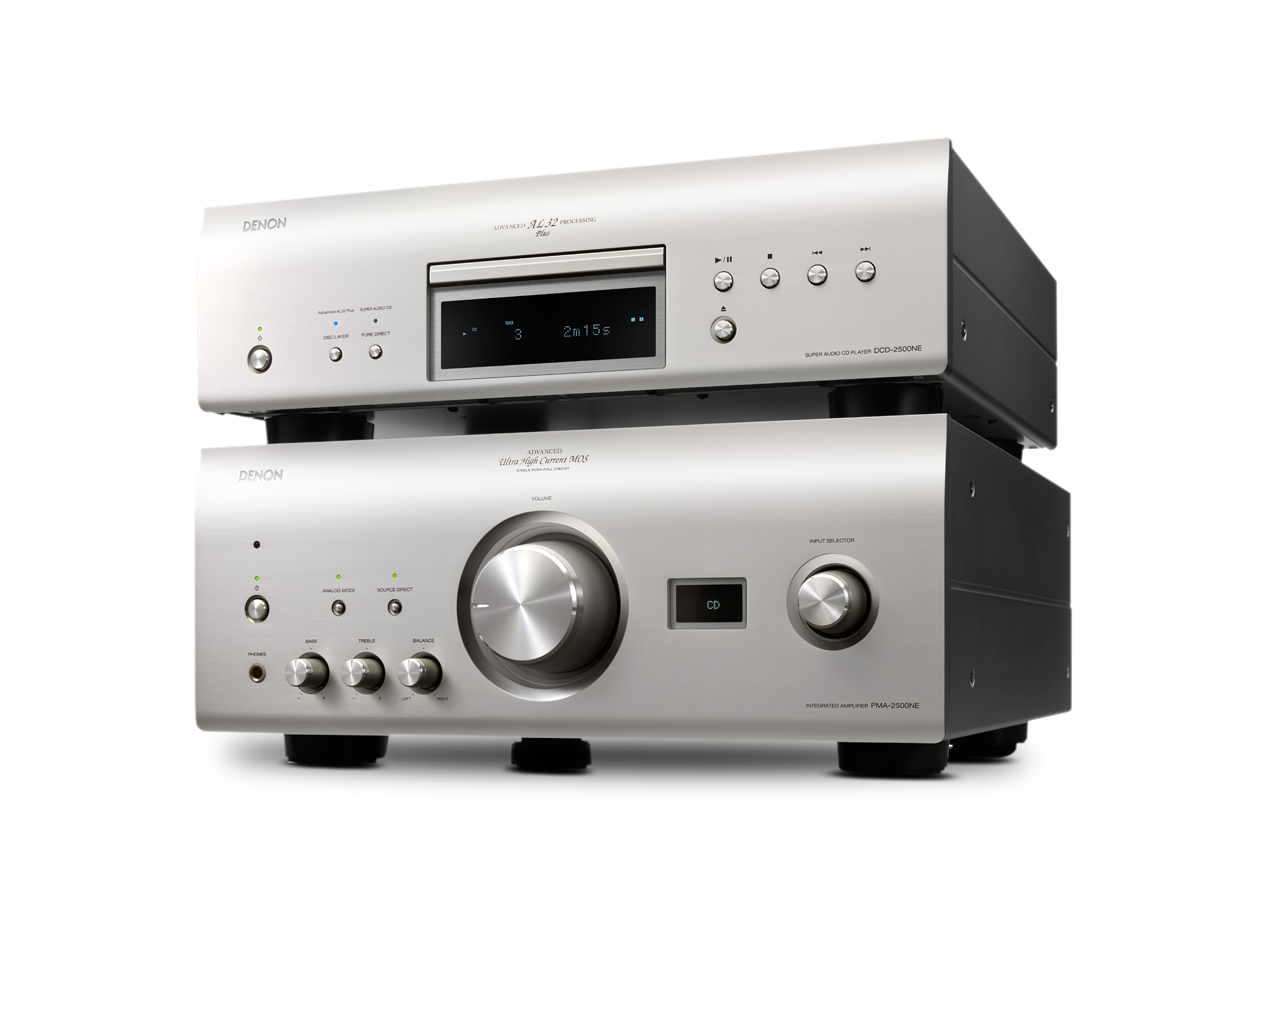 Denon PMA-2500NE - 160W Stereo Integrated Amplifier